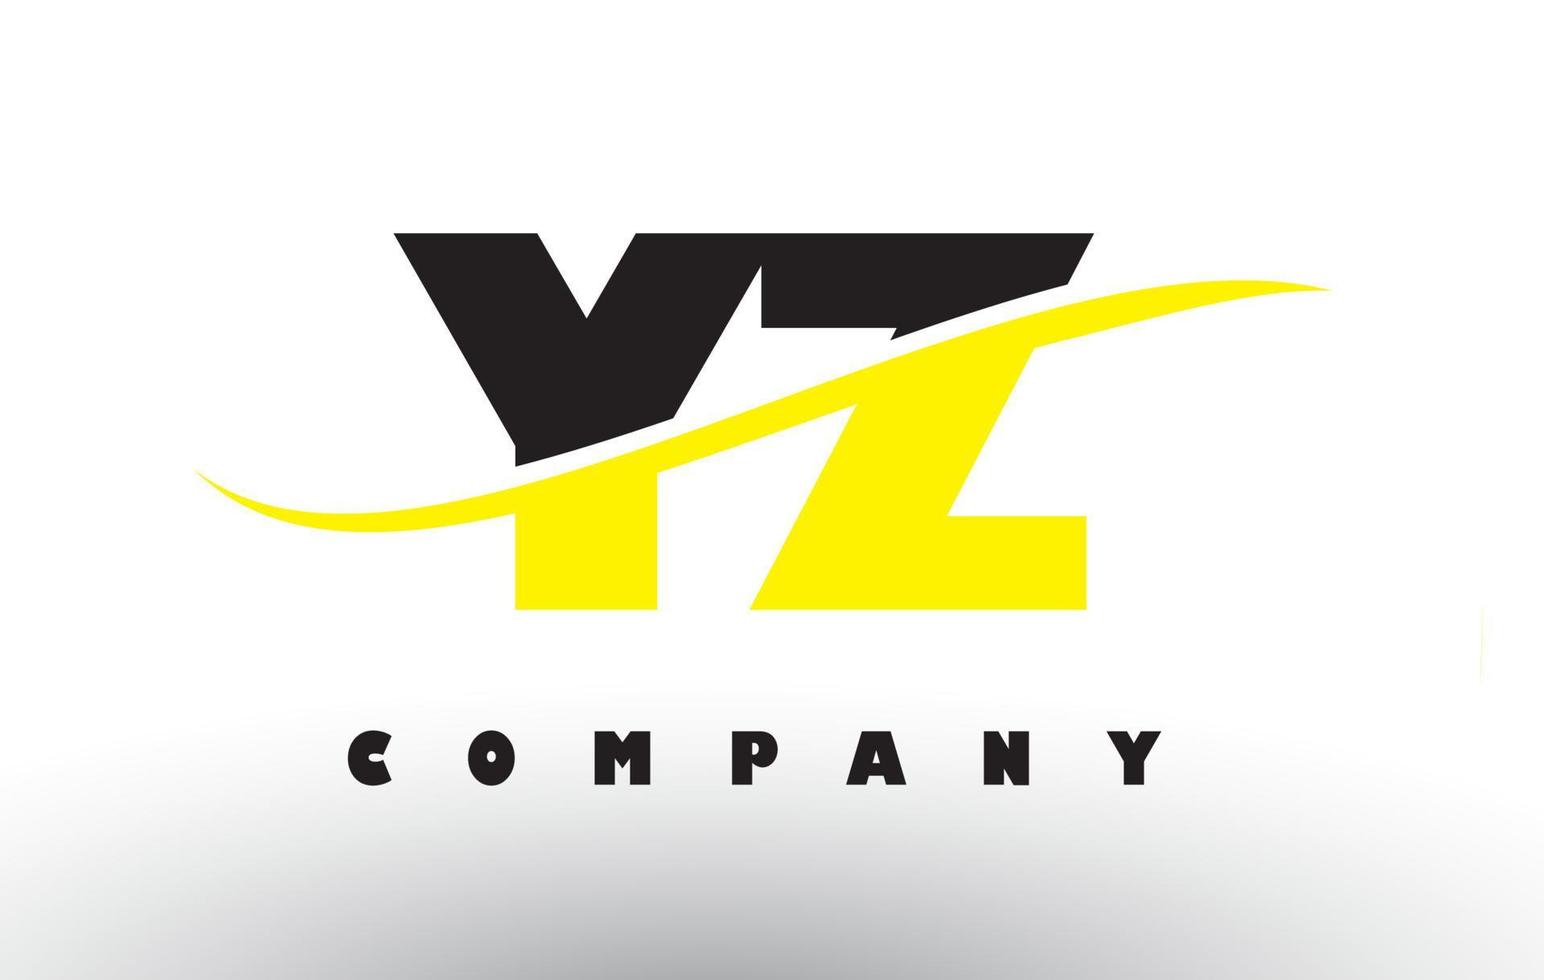 Yz yz logo de letra negra y amarilla con swoosh. vector